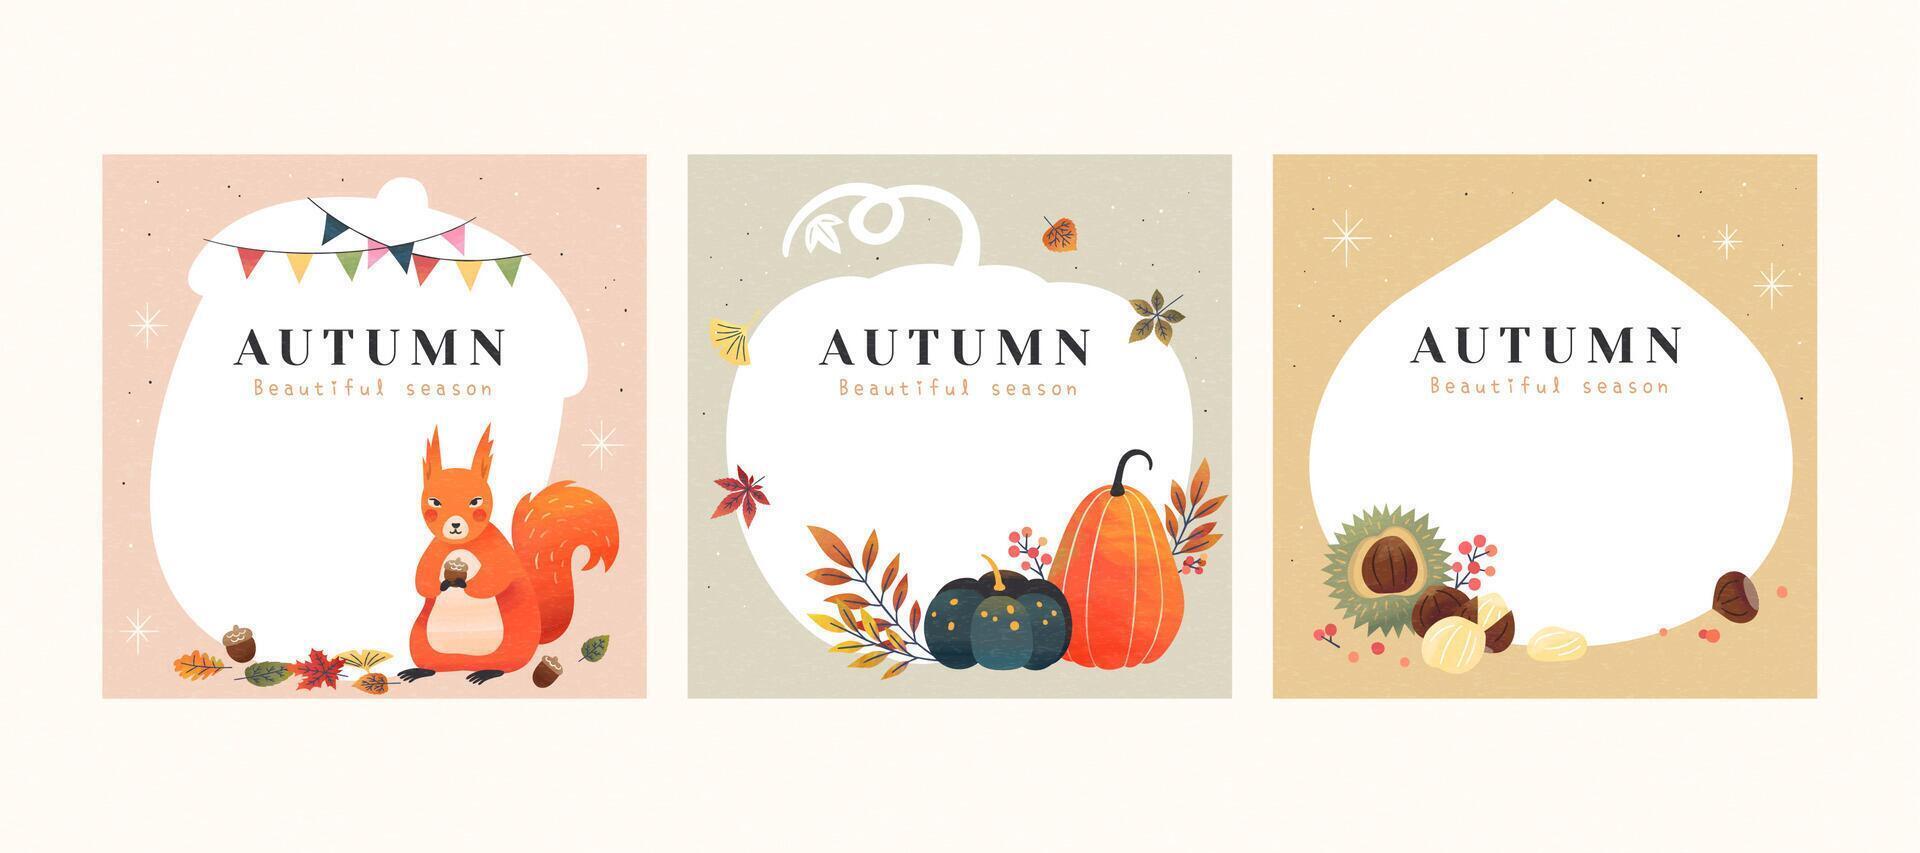 conjunto de otoño mano dibujado ilustraciones con espacio de copia, aplicable a tarjeta, cubrir y social medios de comunicación enviar vector